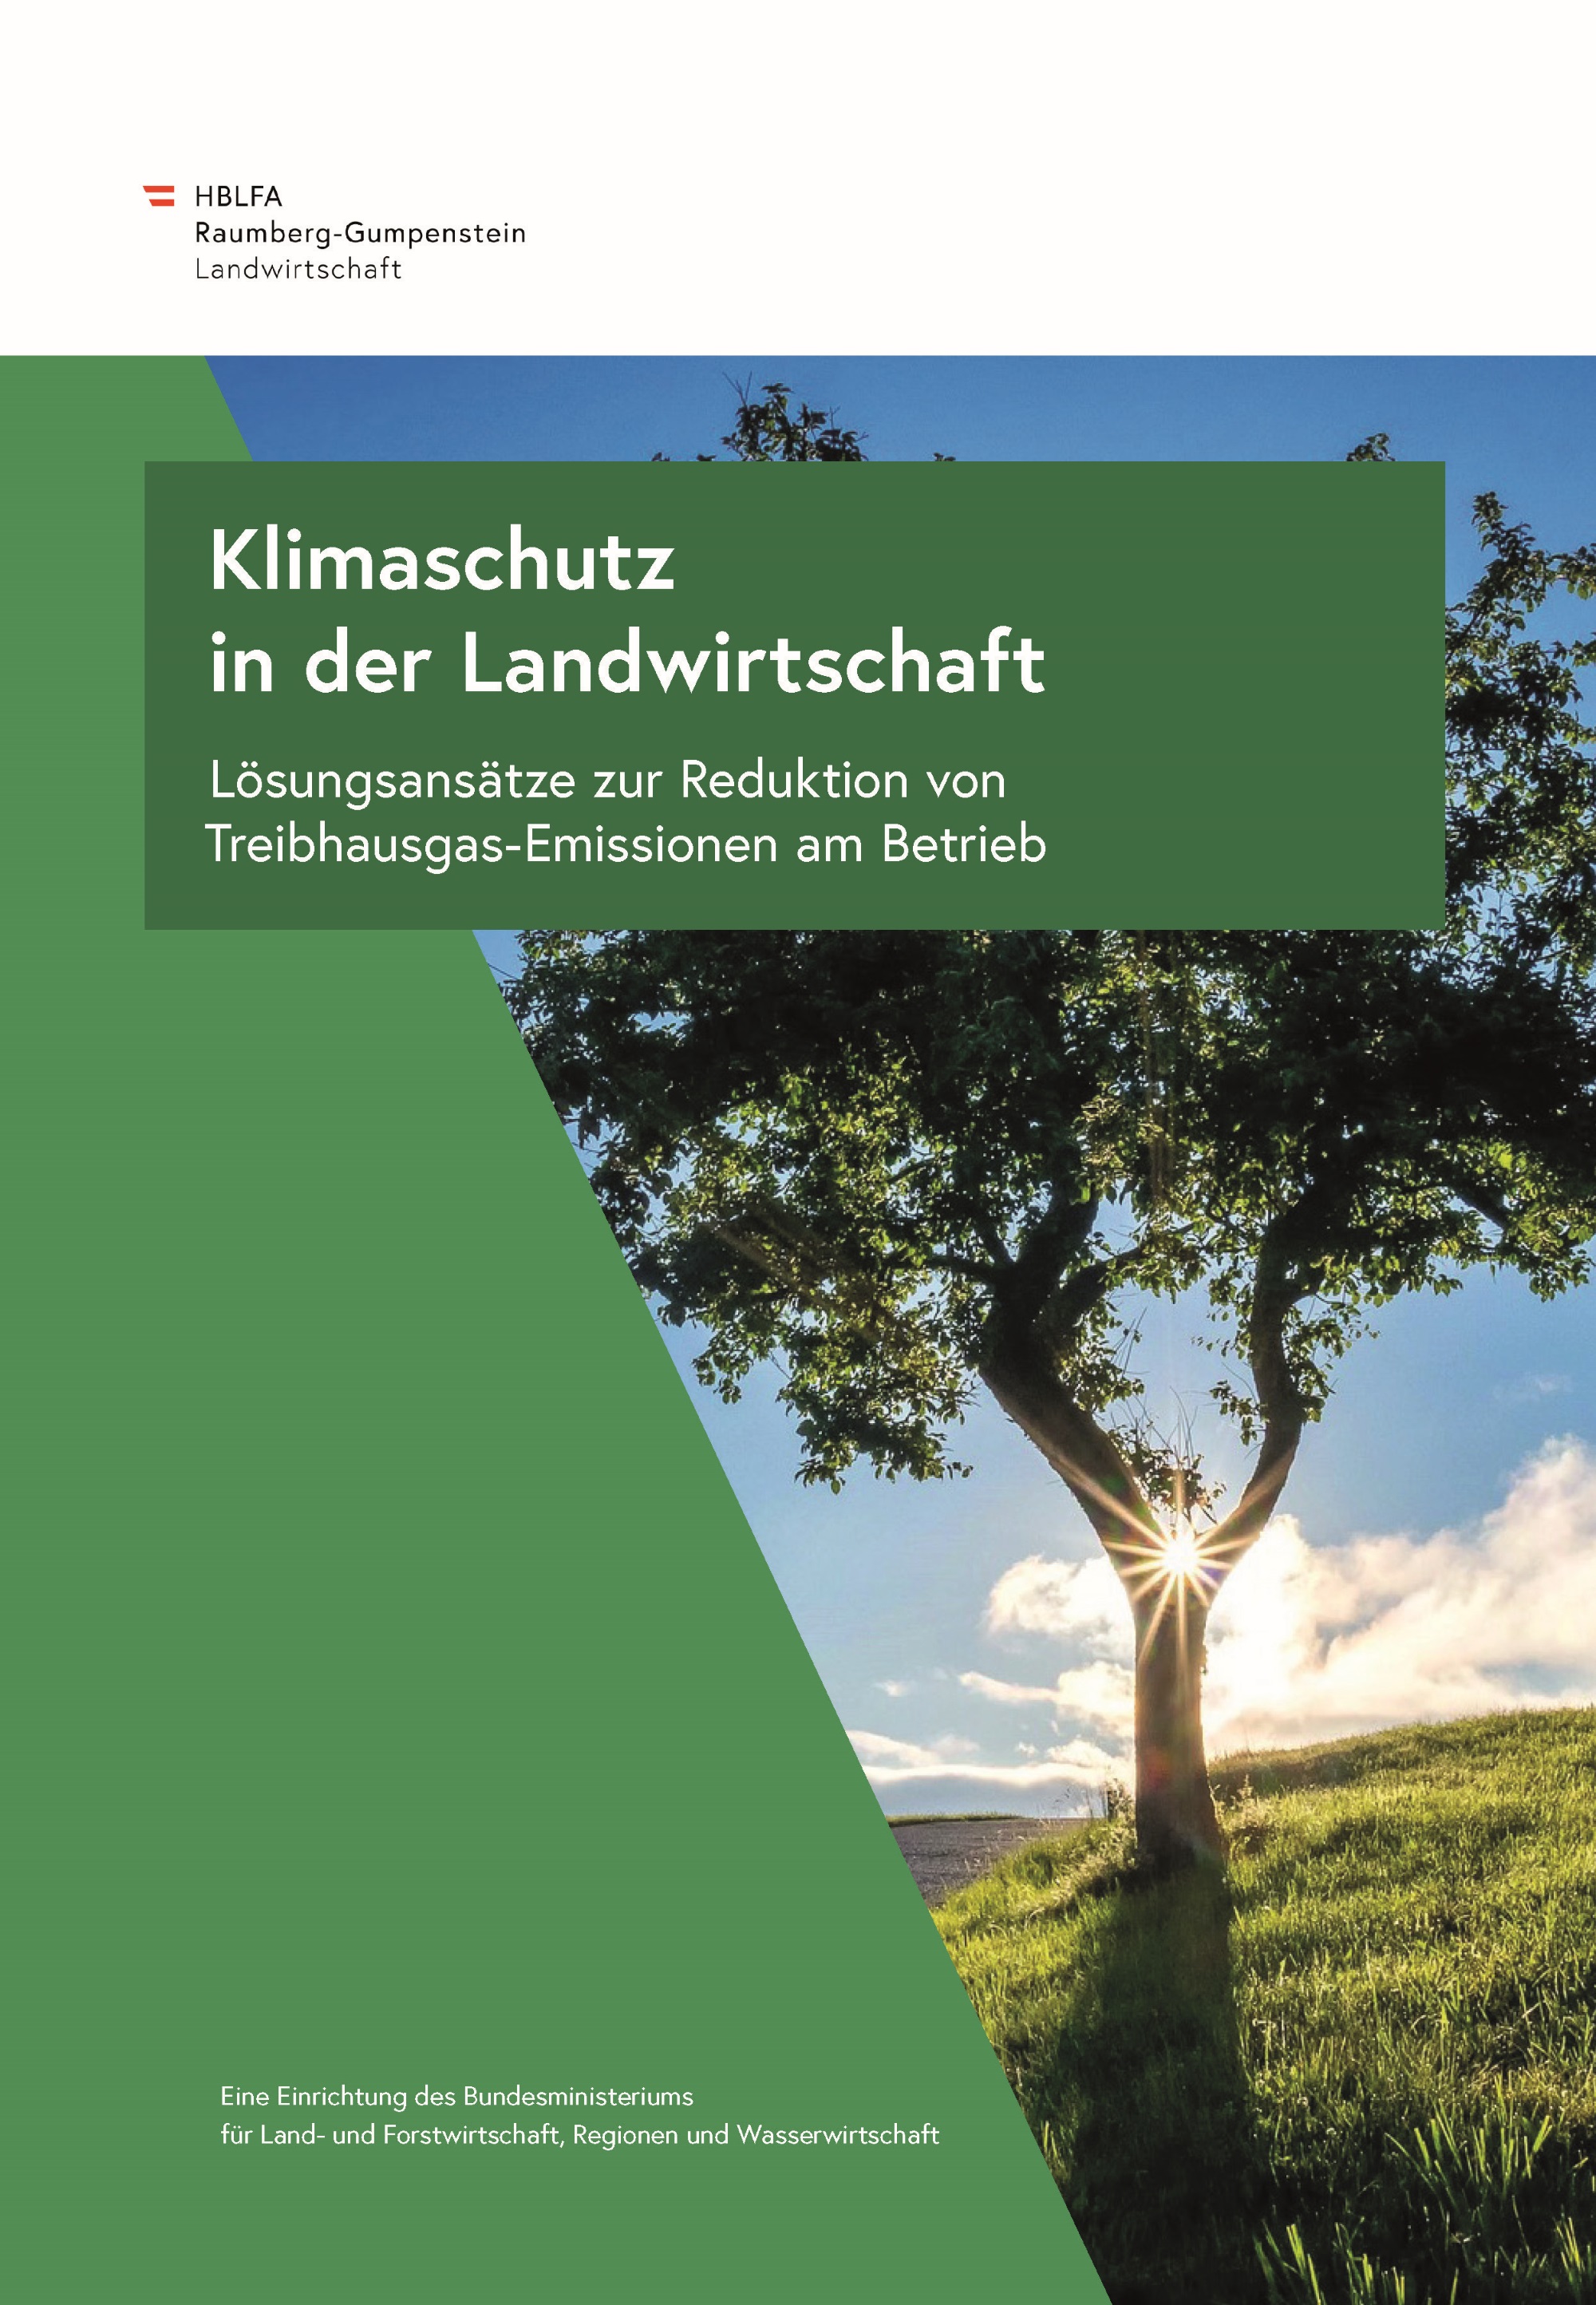 Klimabroschüre der HBLFA Raumberg-Gumpenstein